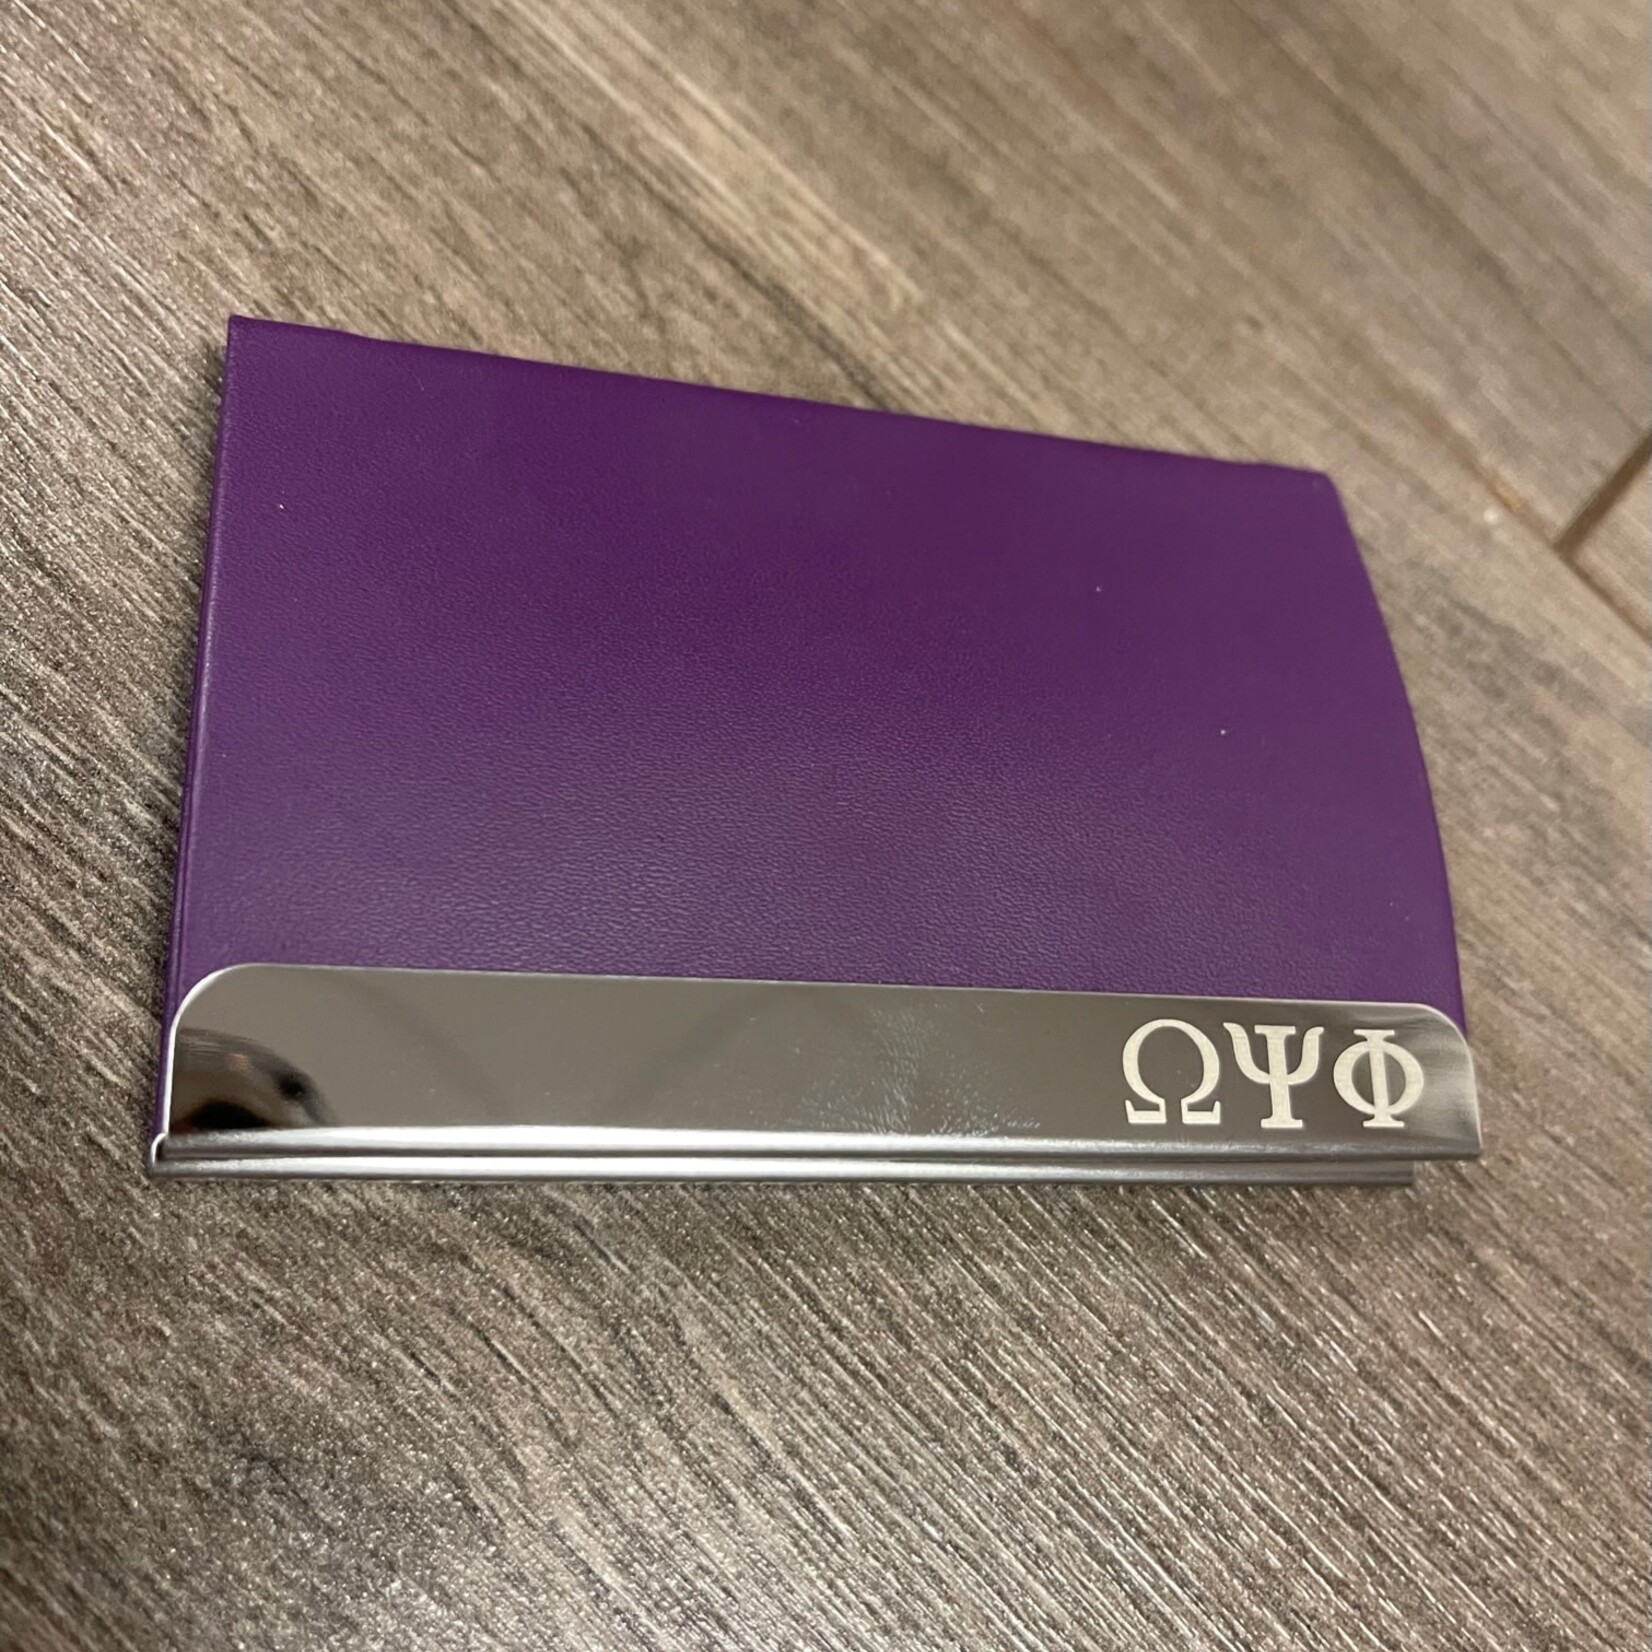 ΩΨΦ OPP Laser Engraved Business Card Holder